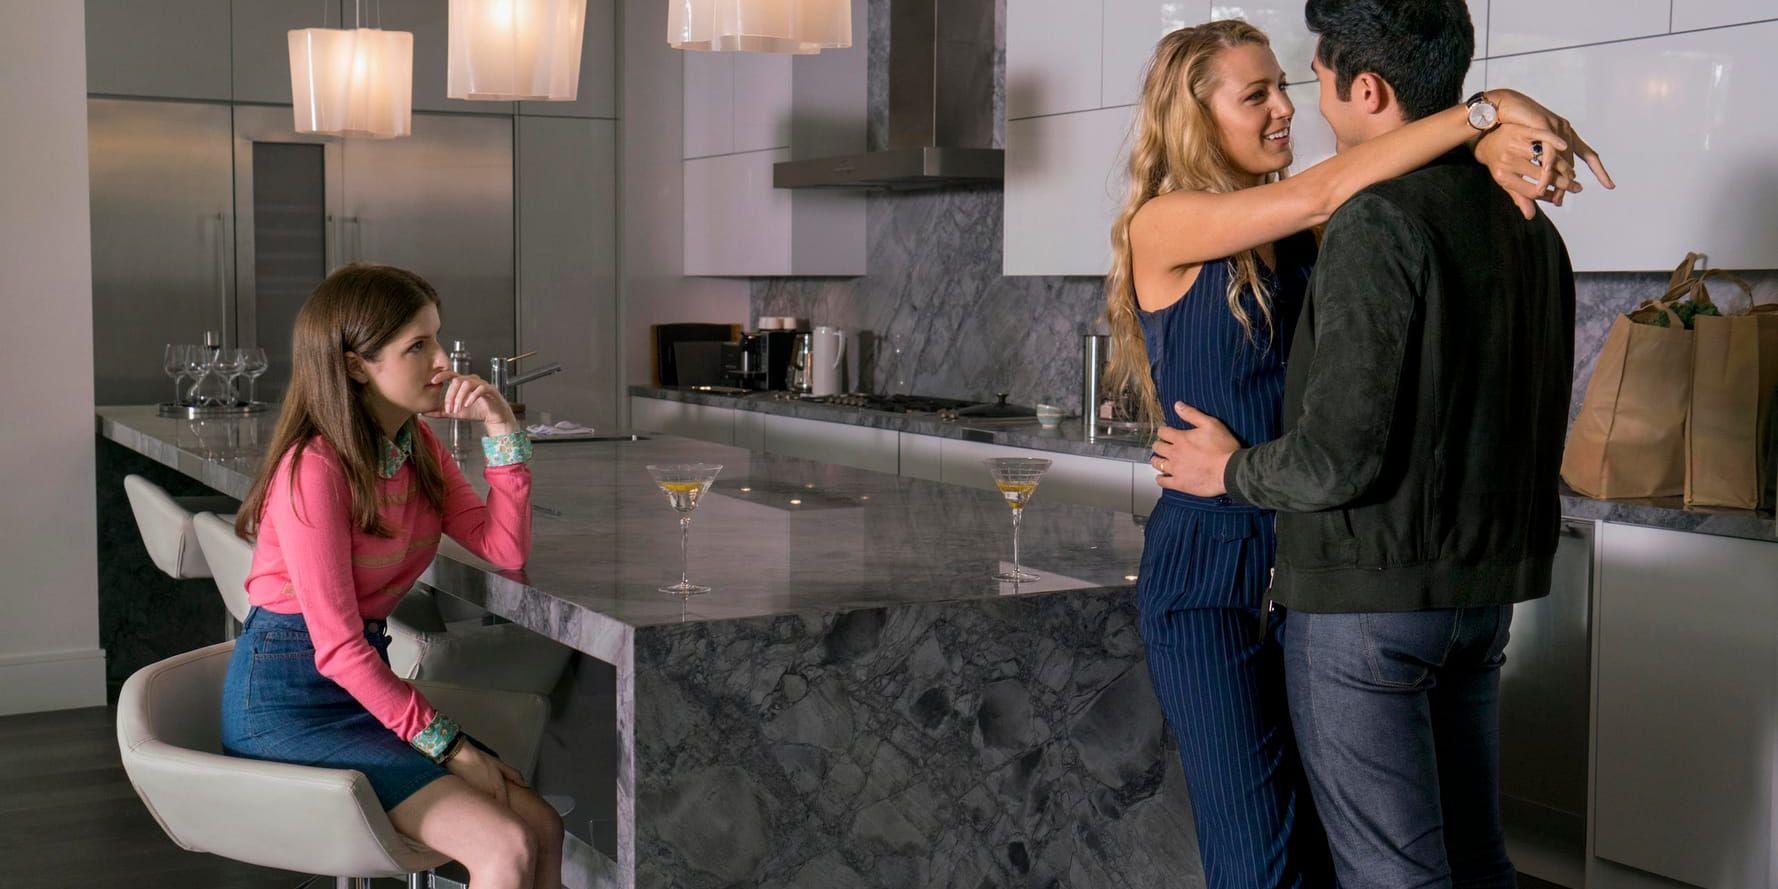 Mammabloggaren Stephanie (Anna Kendrick) lär känna den glamorösa Emily (Blake Lively) och hennes man Sean (Henry Golding) i ”A simple favor”. Pressbild.